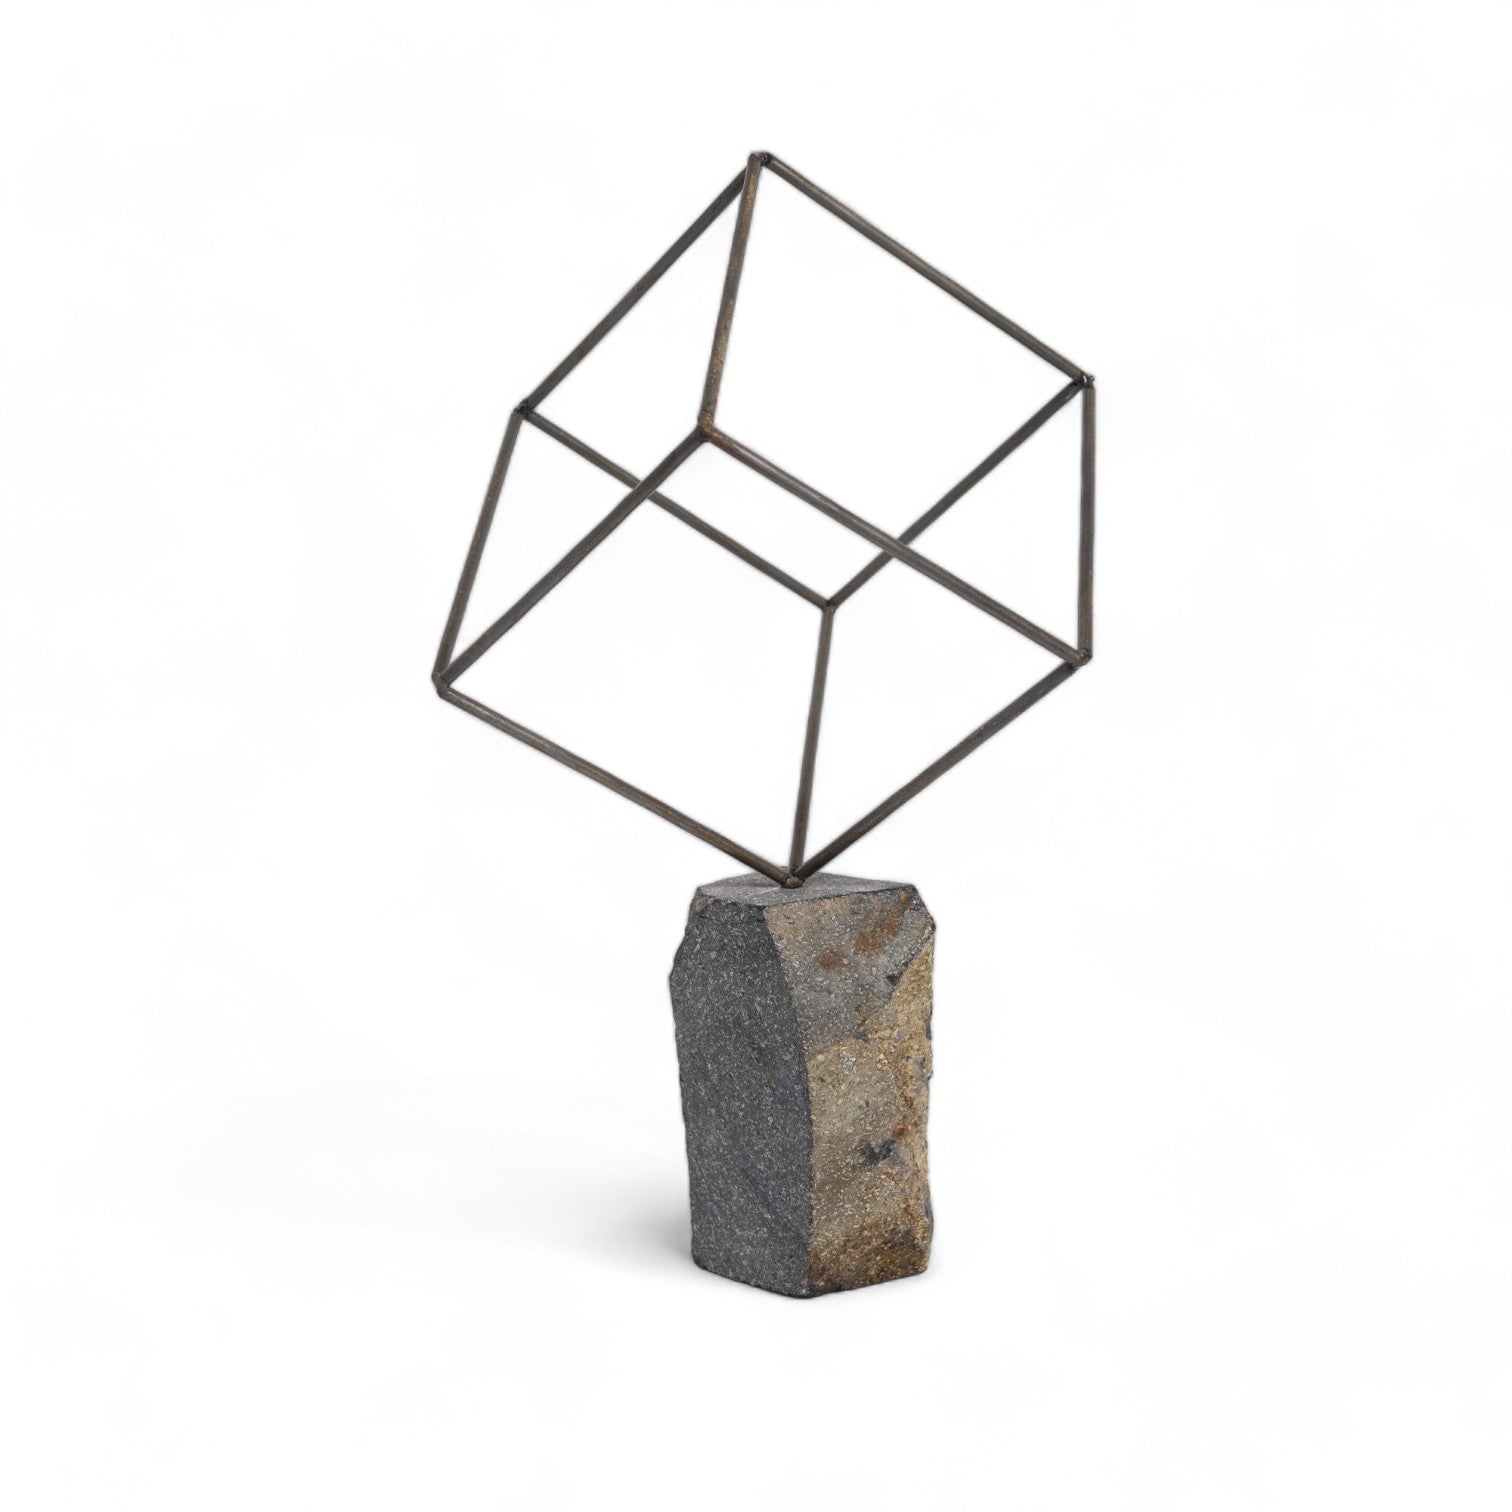 Single Cube Sculpture